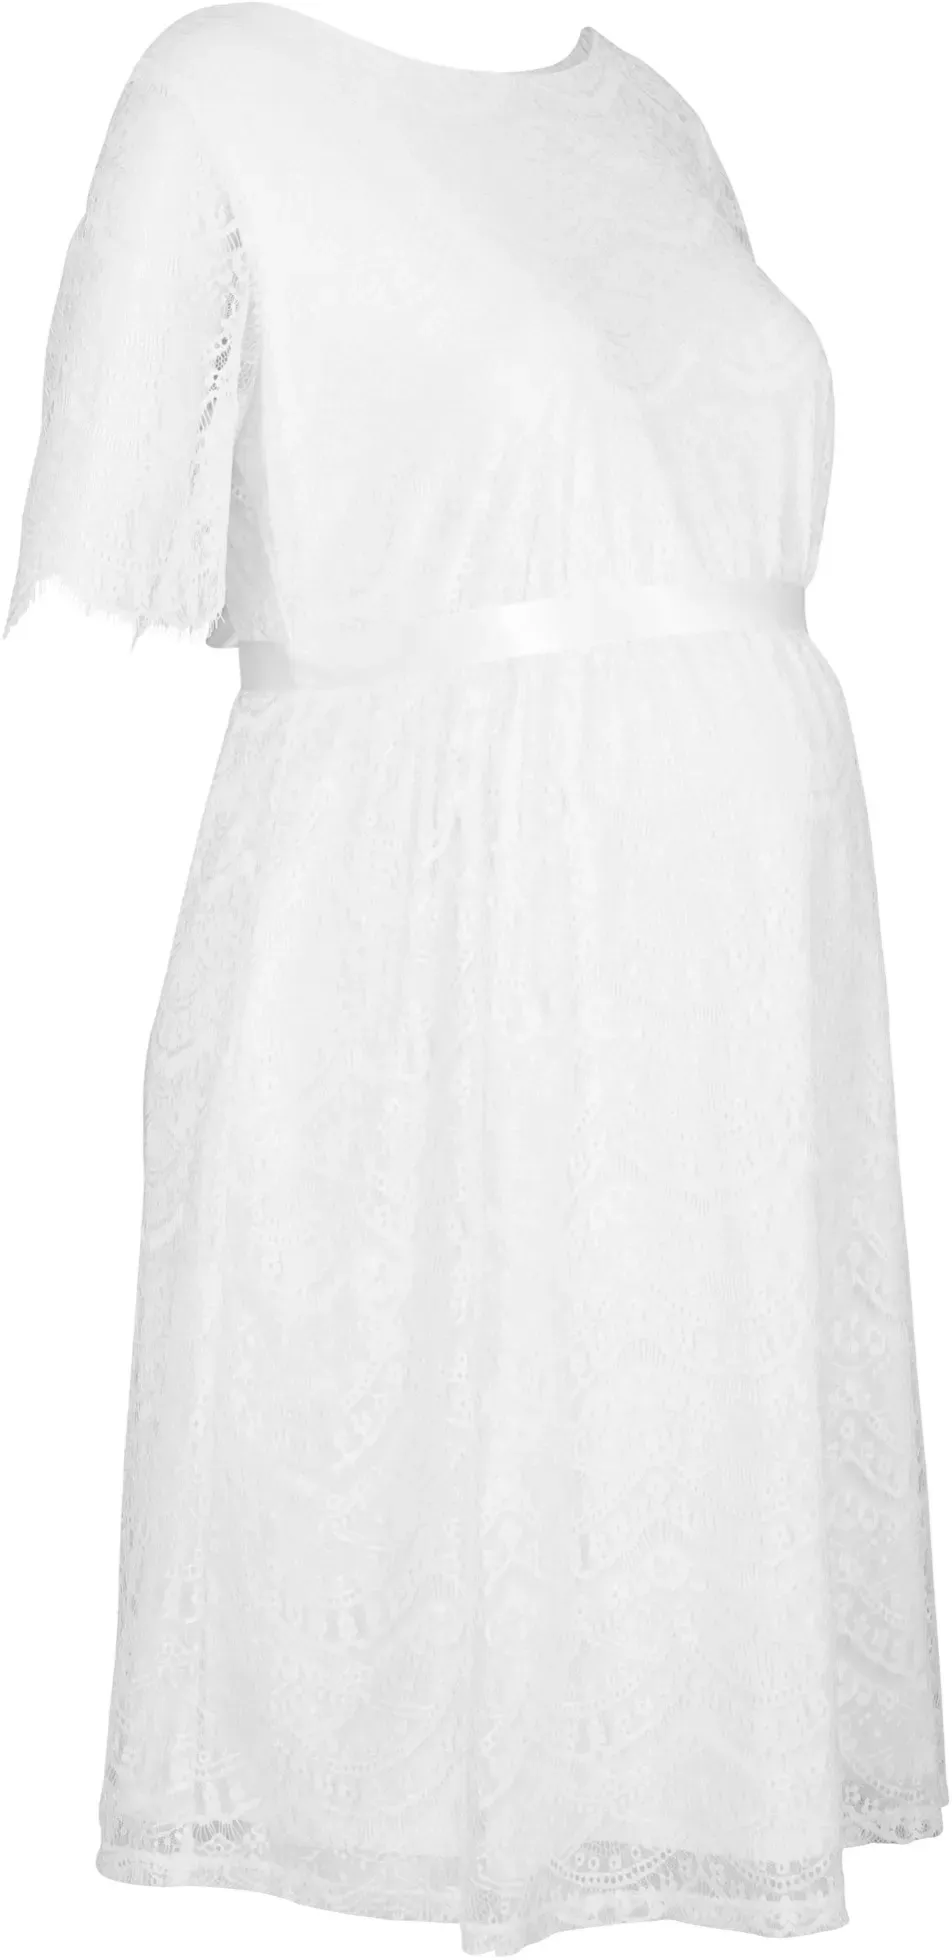 Umstands-Hochzeitskleid aus Spitze, Kurzarm